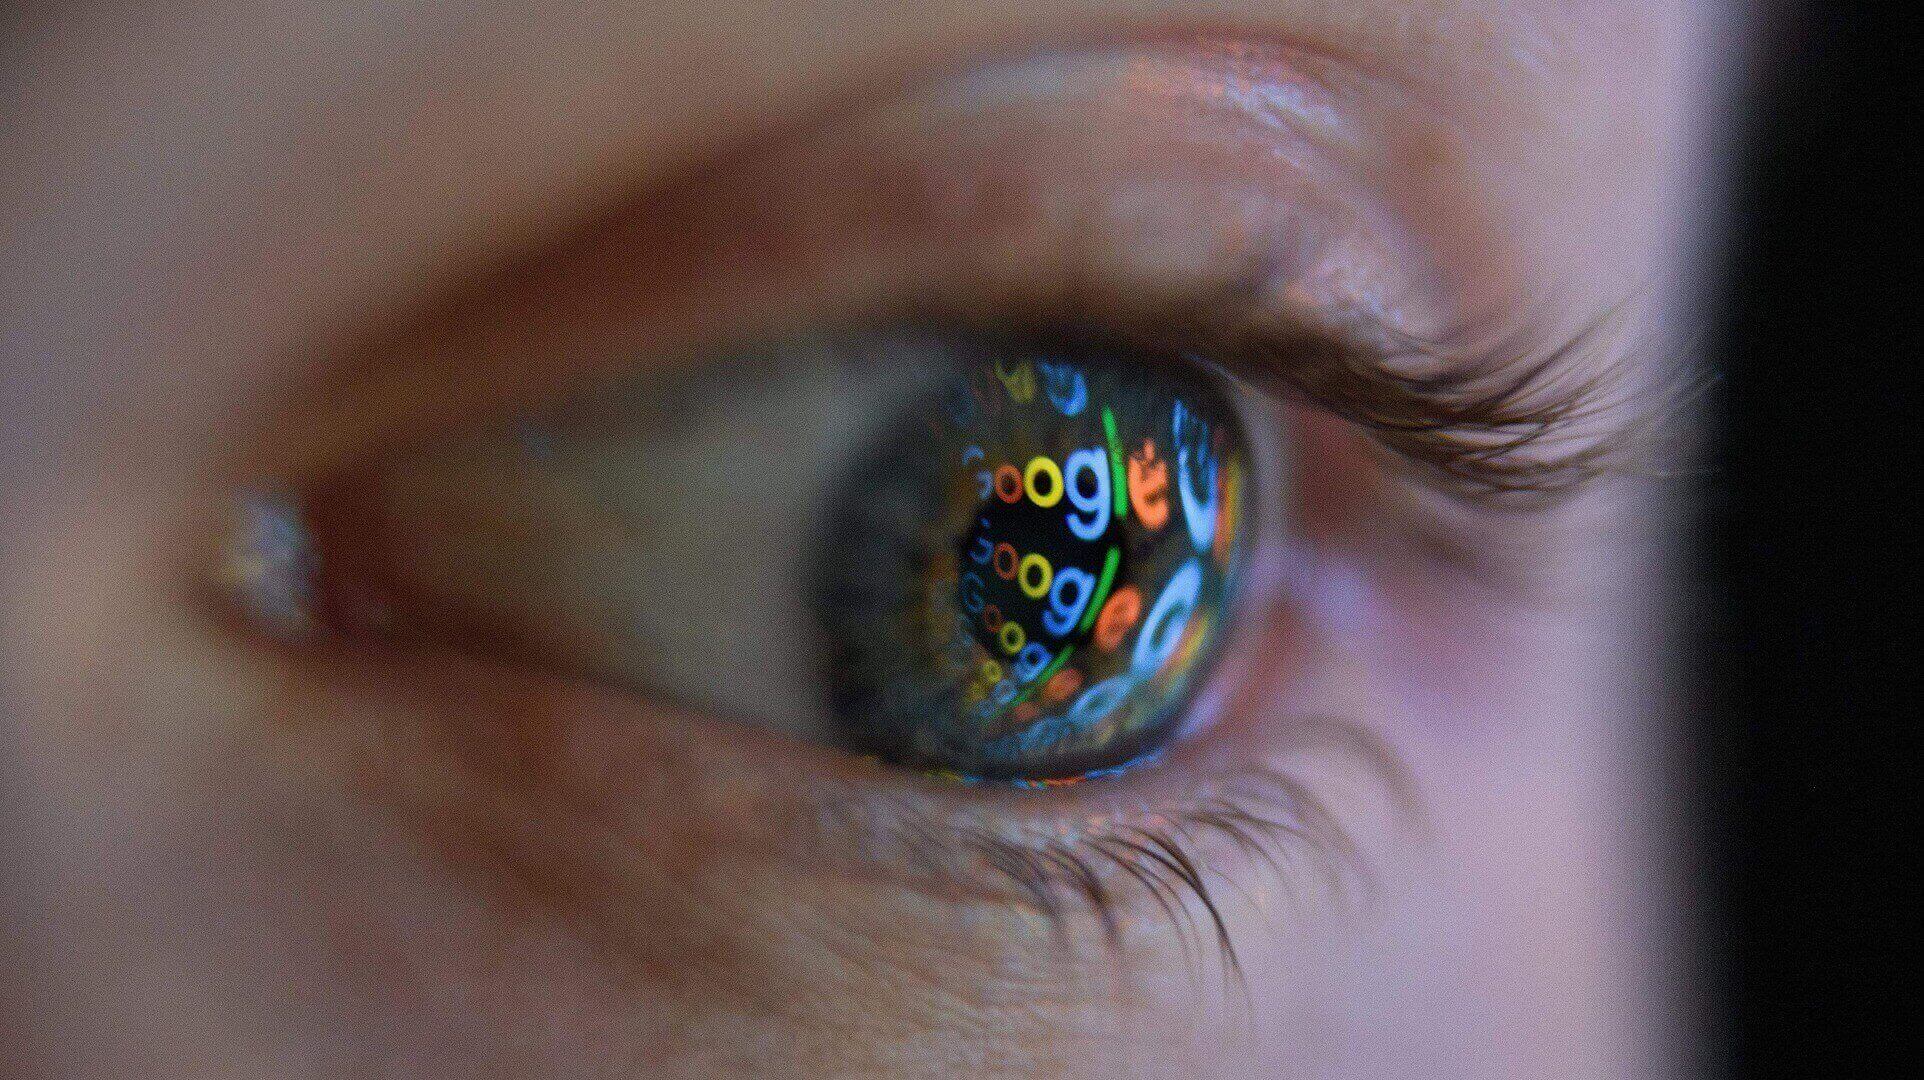 a deeper look into Google